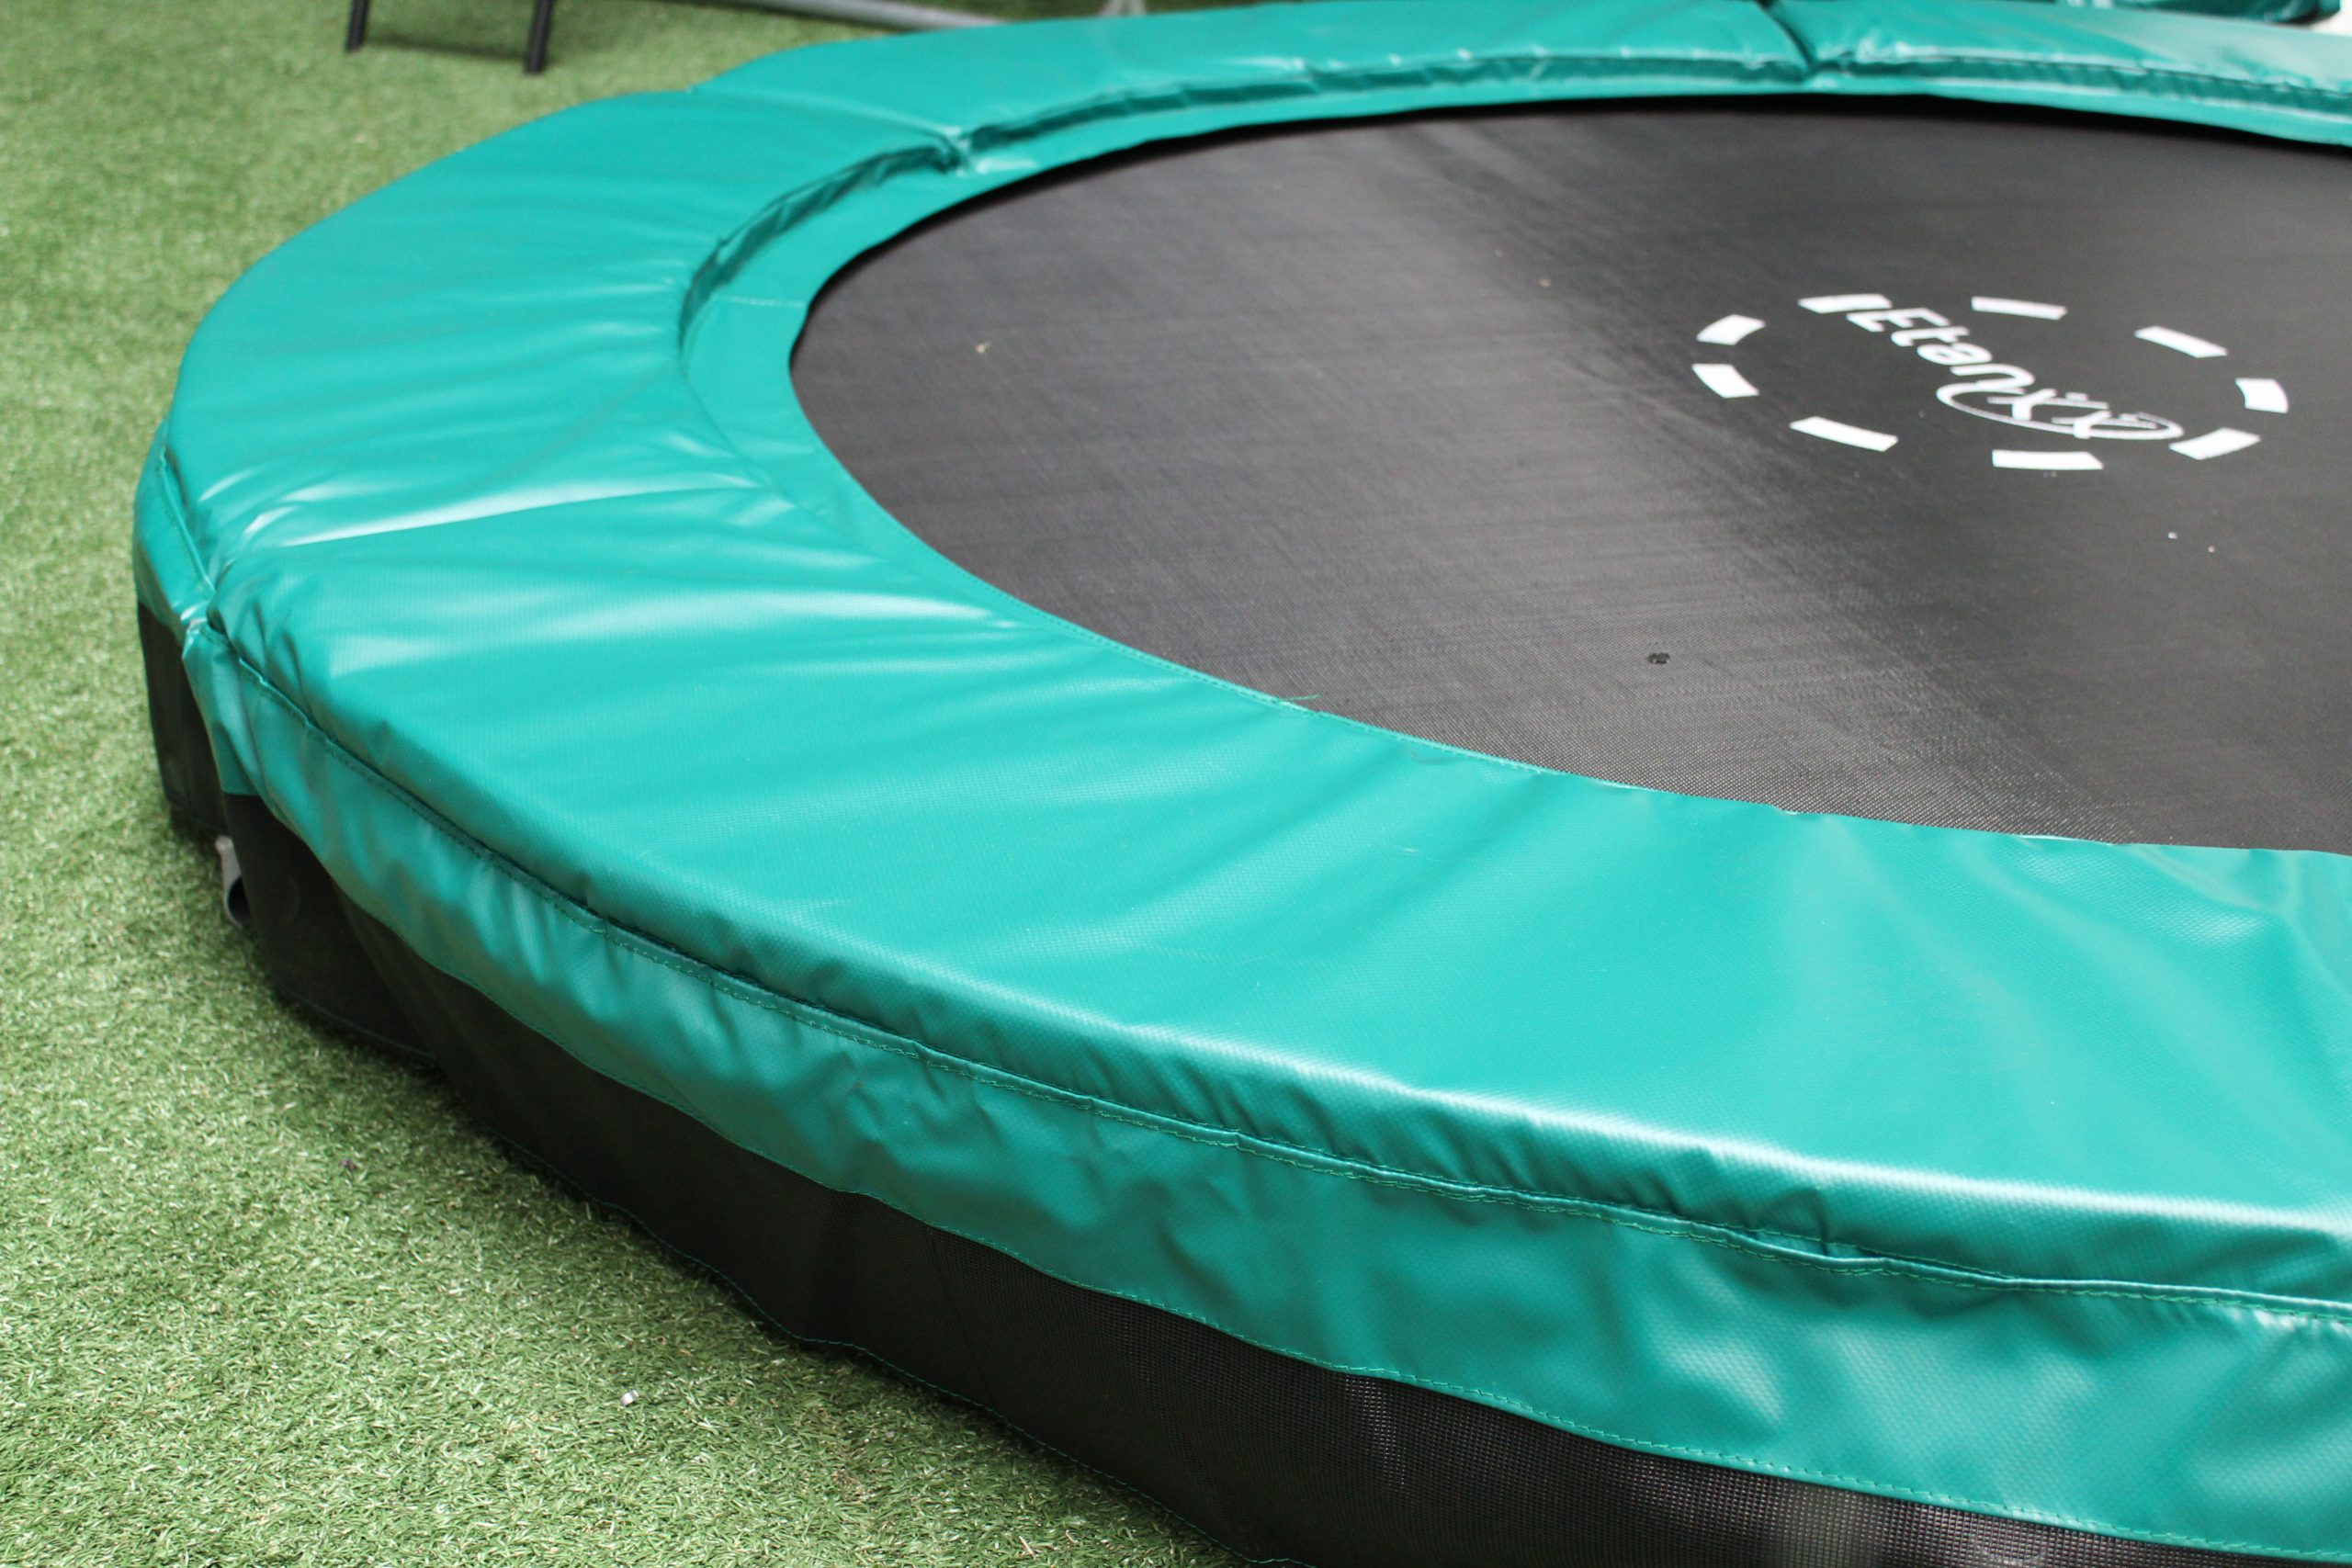 Etan Premium rechthoekige inground trampoline met net deluxe 310 x 232 cm / 1075 grijs